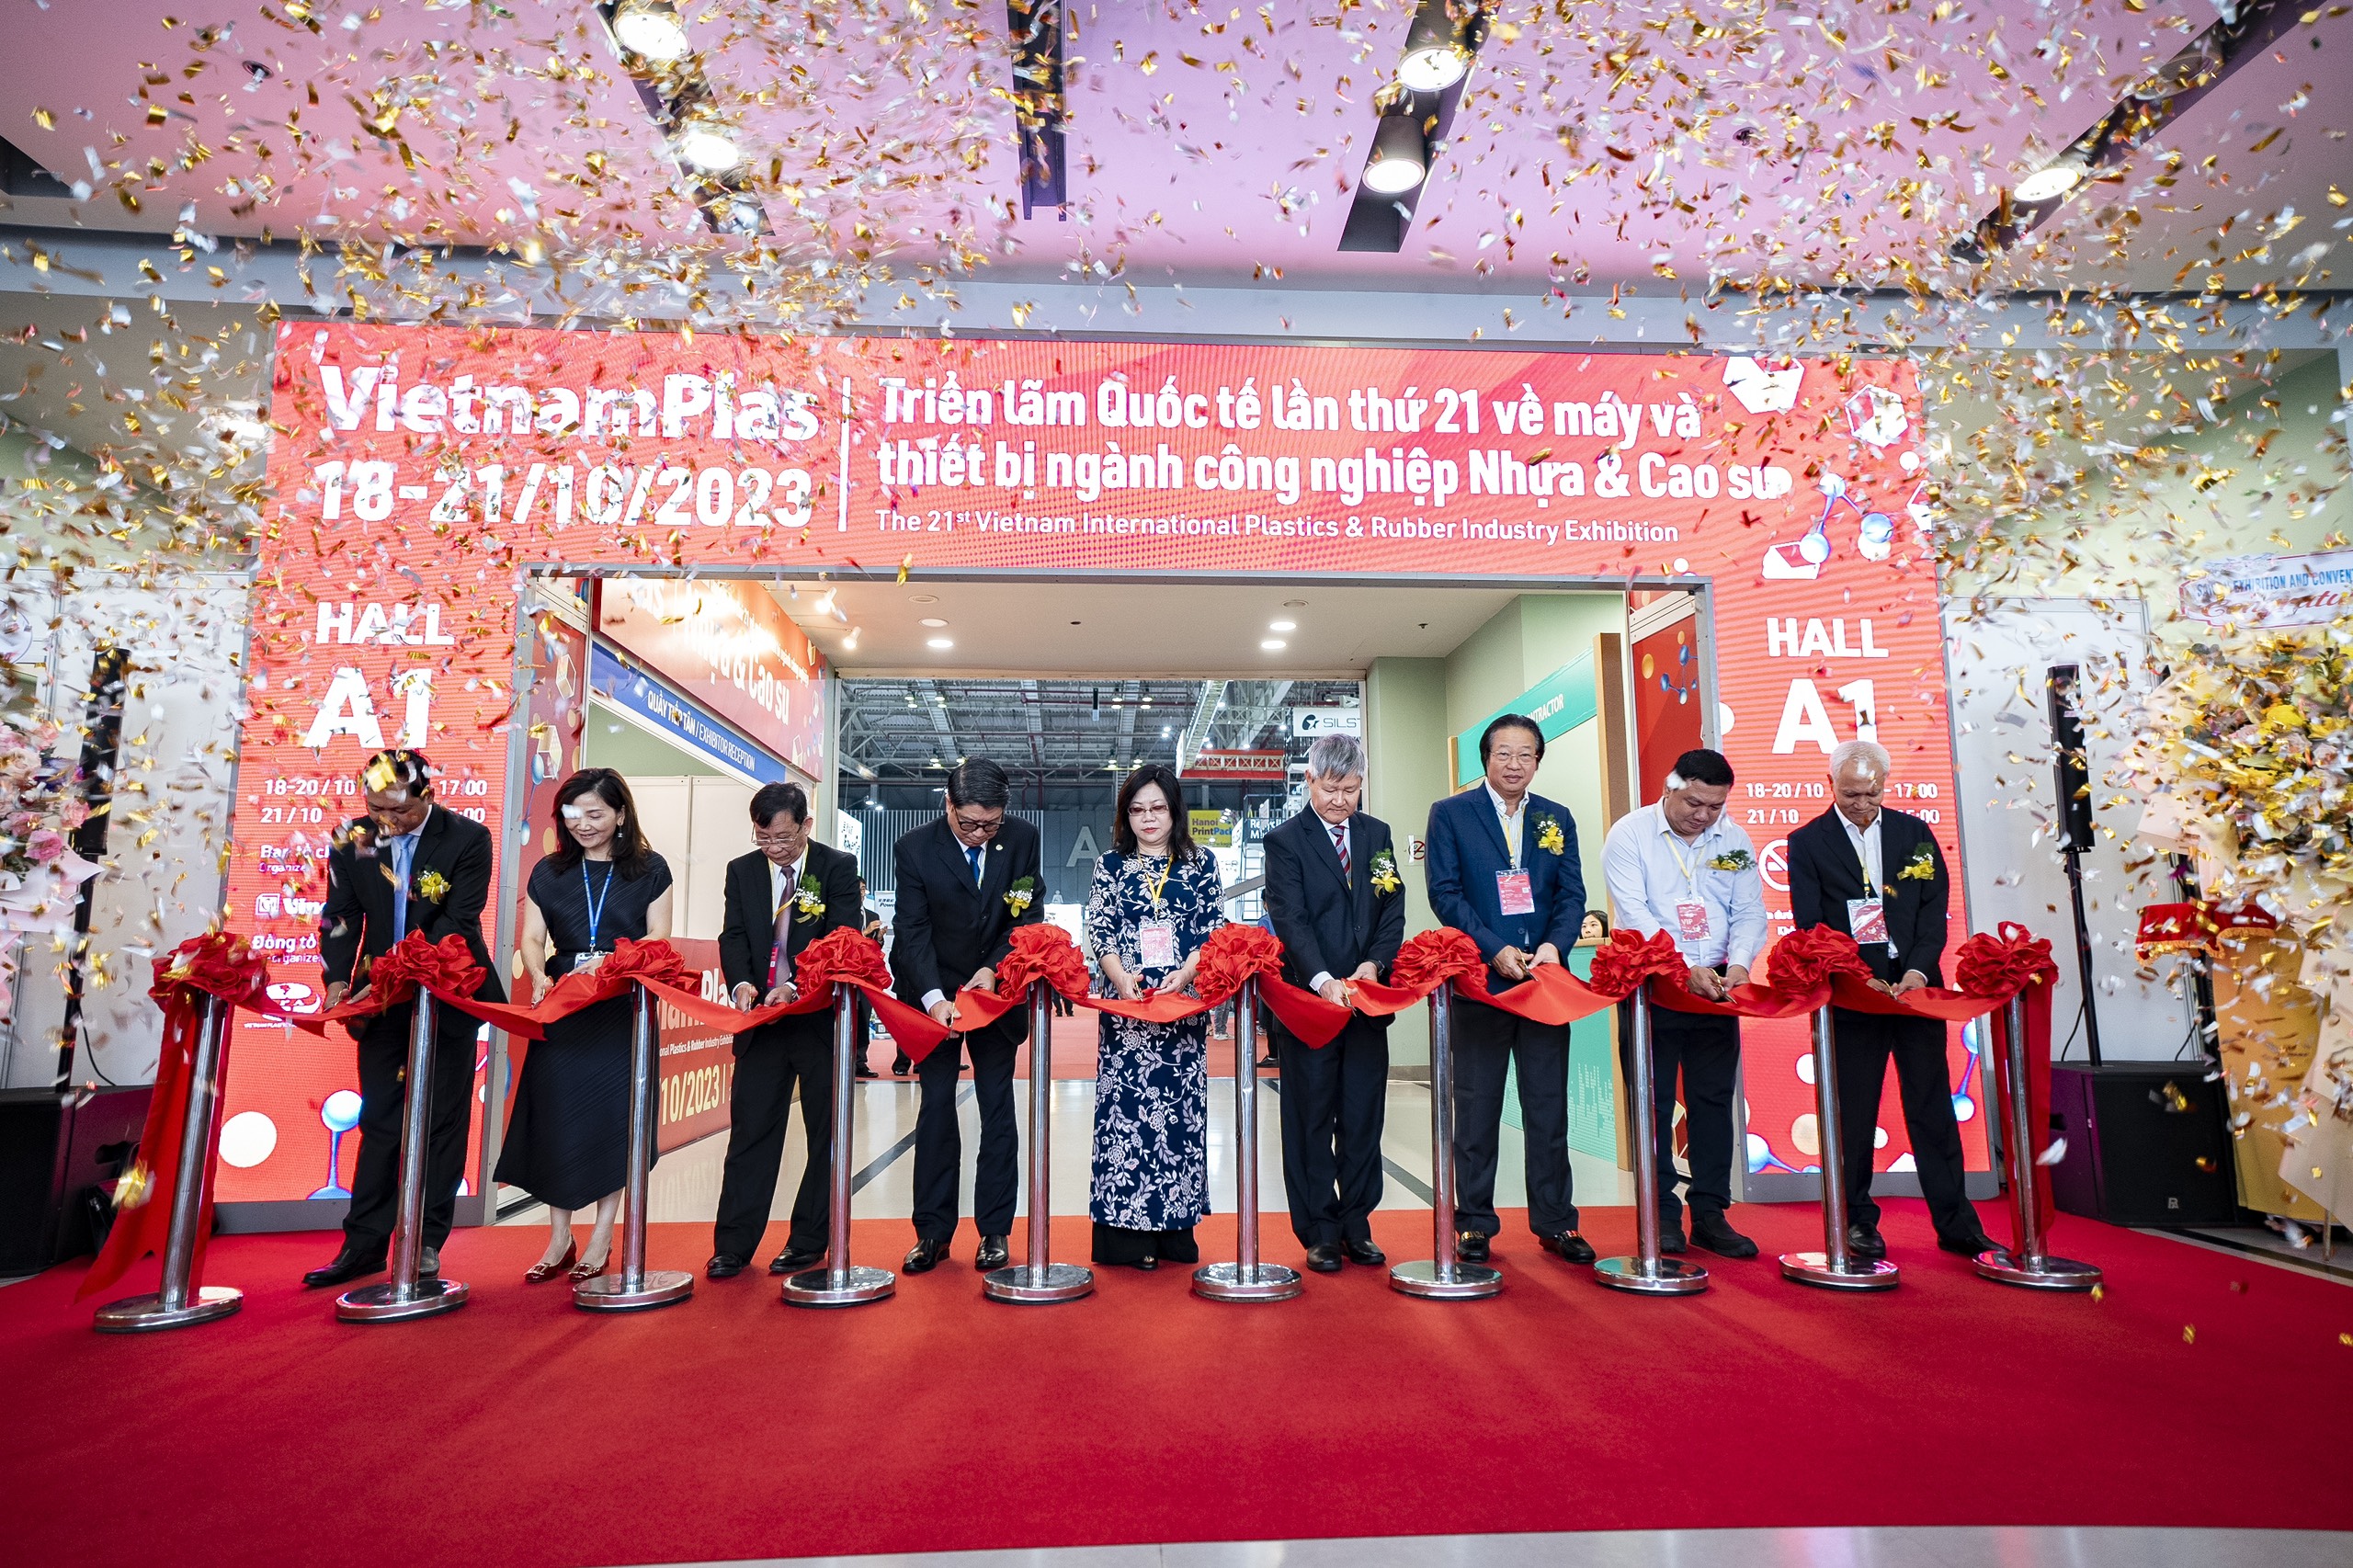 VietnamPlas 2023 - triển lãm ngành nhựa và cao su trở lại TPHCM với quy mô hơn 1.100 gian hàng